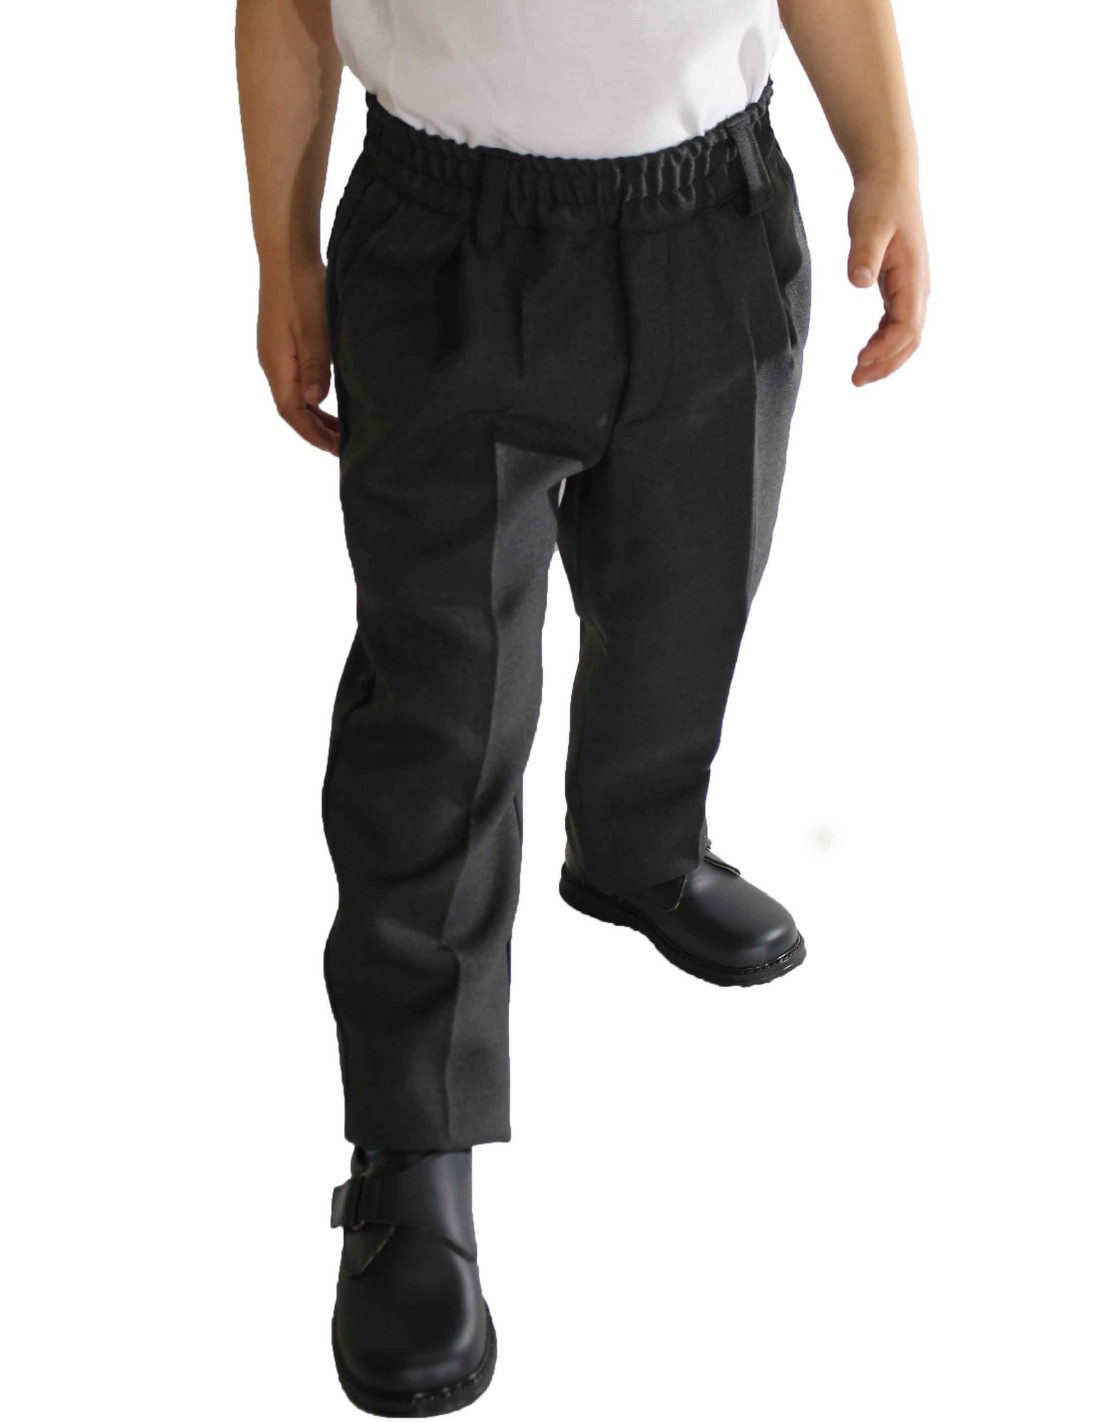 Pantalón largo gris colegial con goma básico para niño/a